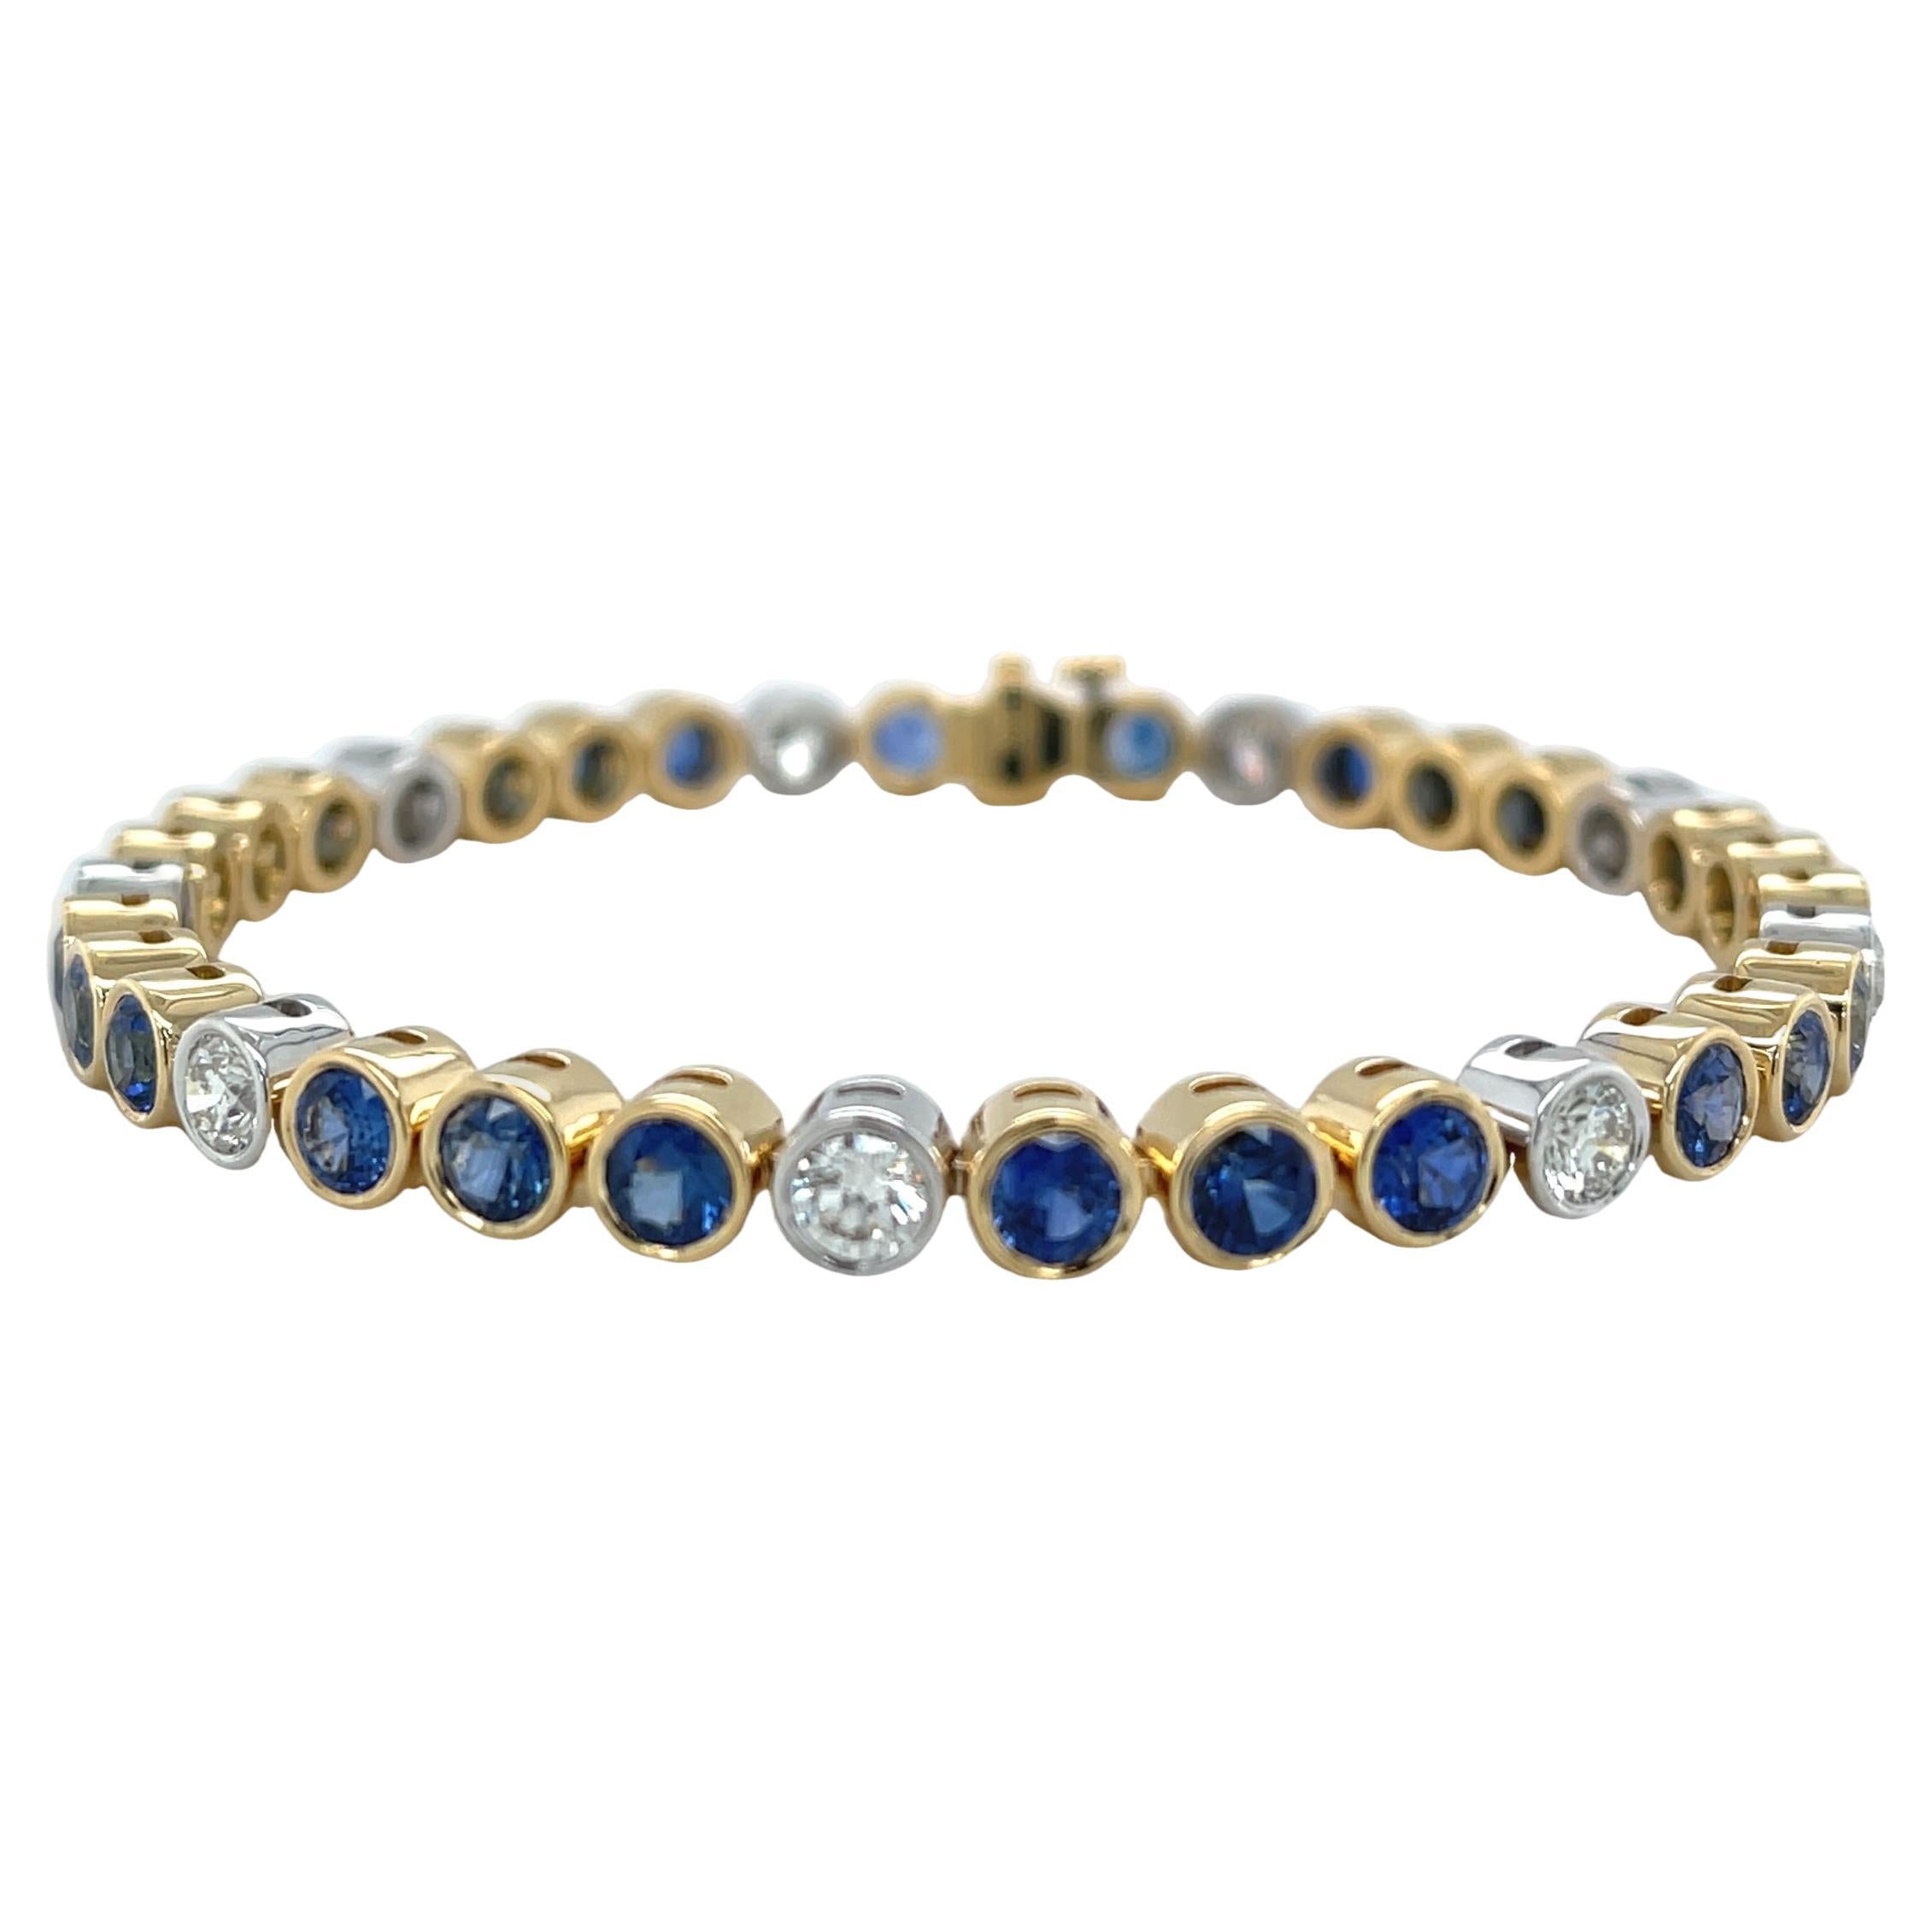  Bracelet tennis en or 18 carats avec saphir bleu et diamants, 7,49 carats au total